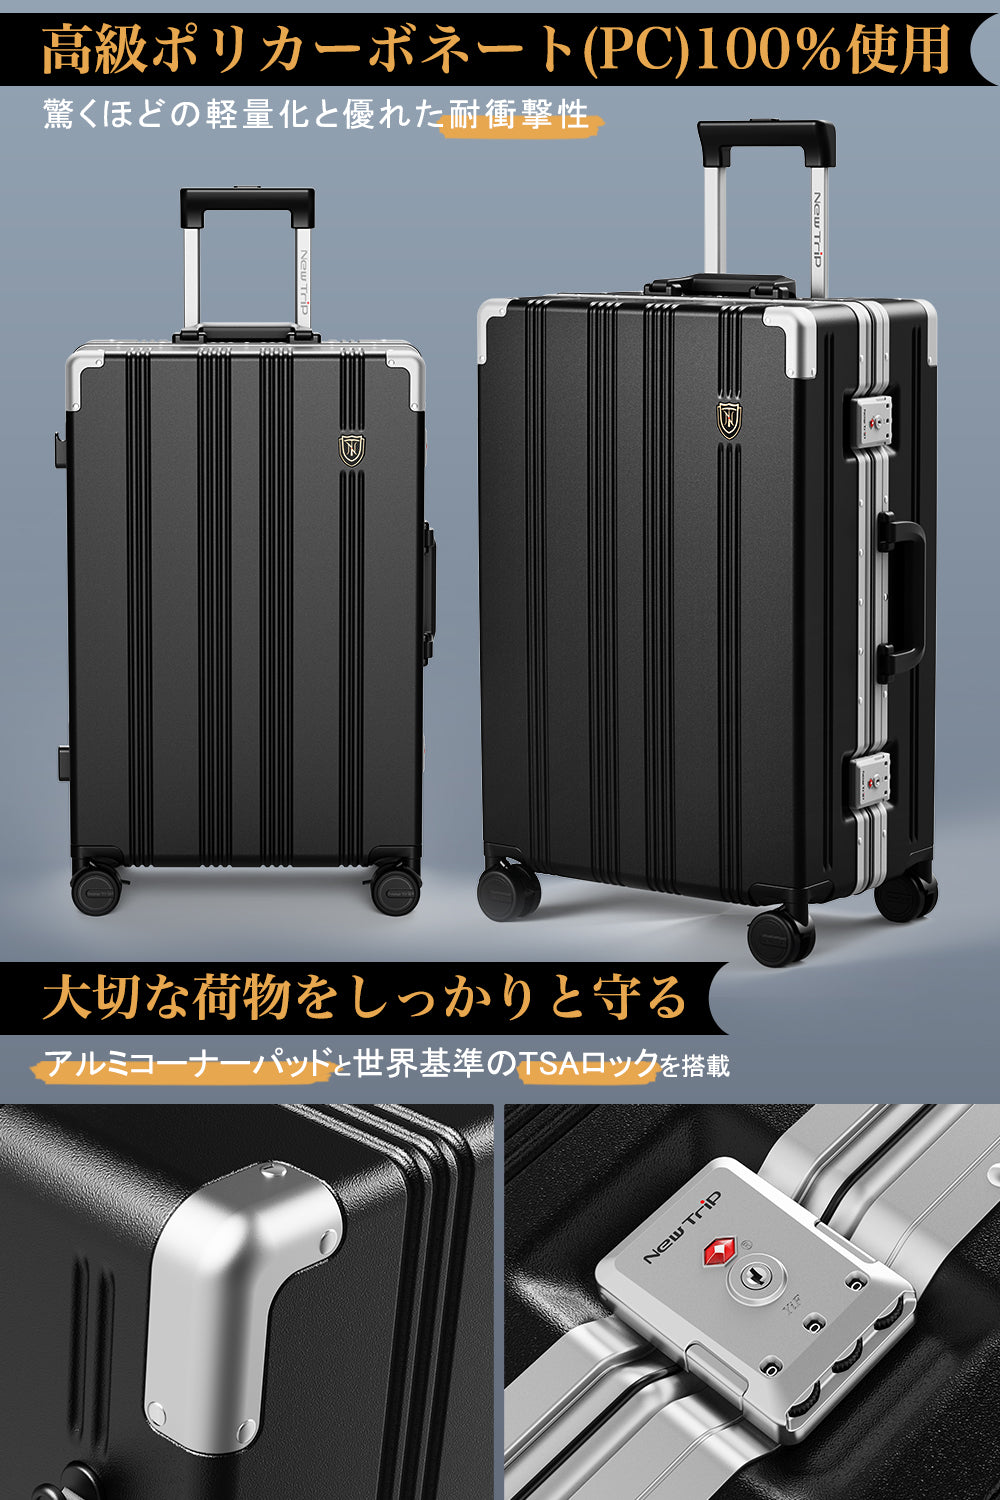 [New Trip]スーツケースアルミフレームタイプ PC100%素材 耐衝撃